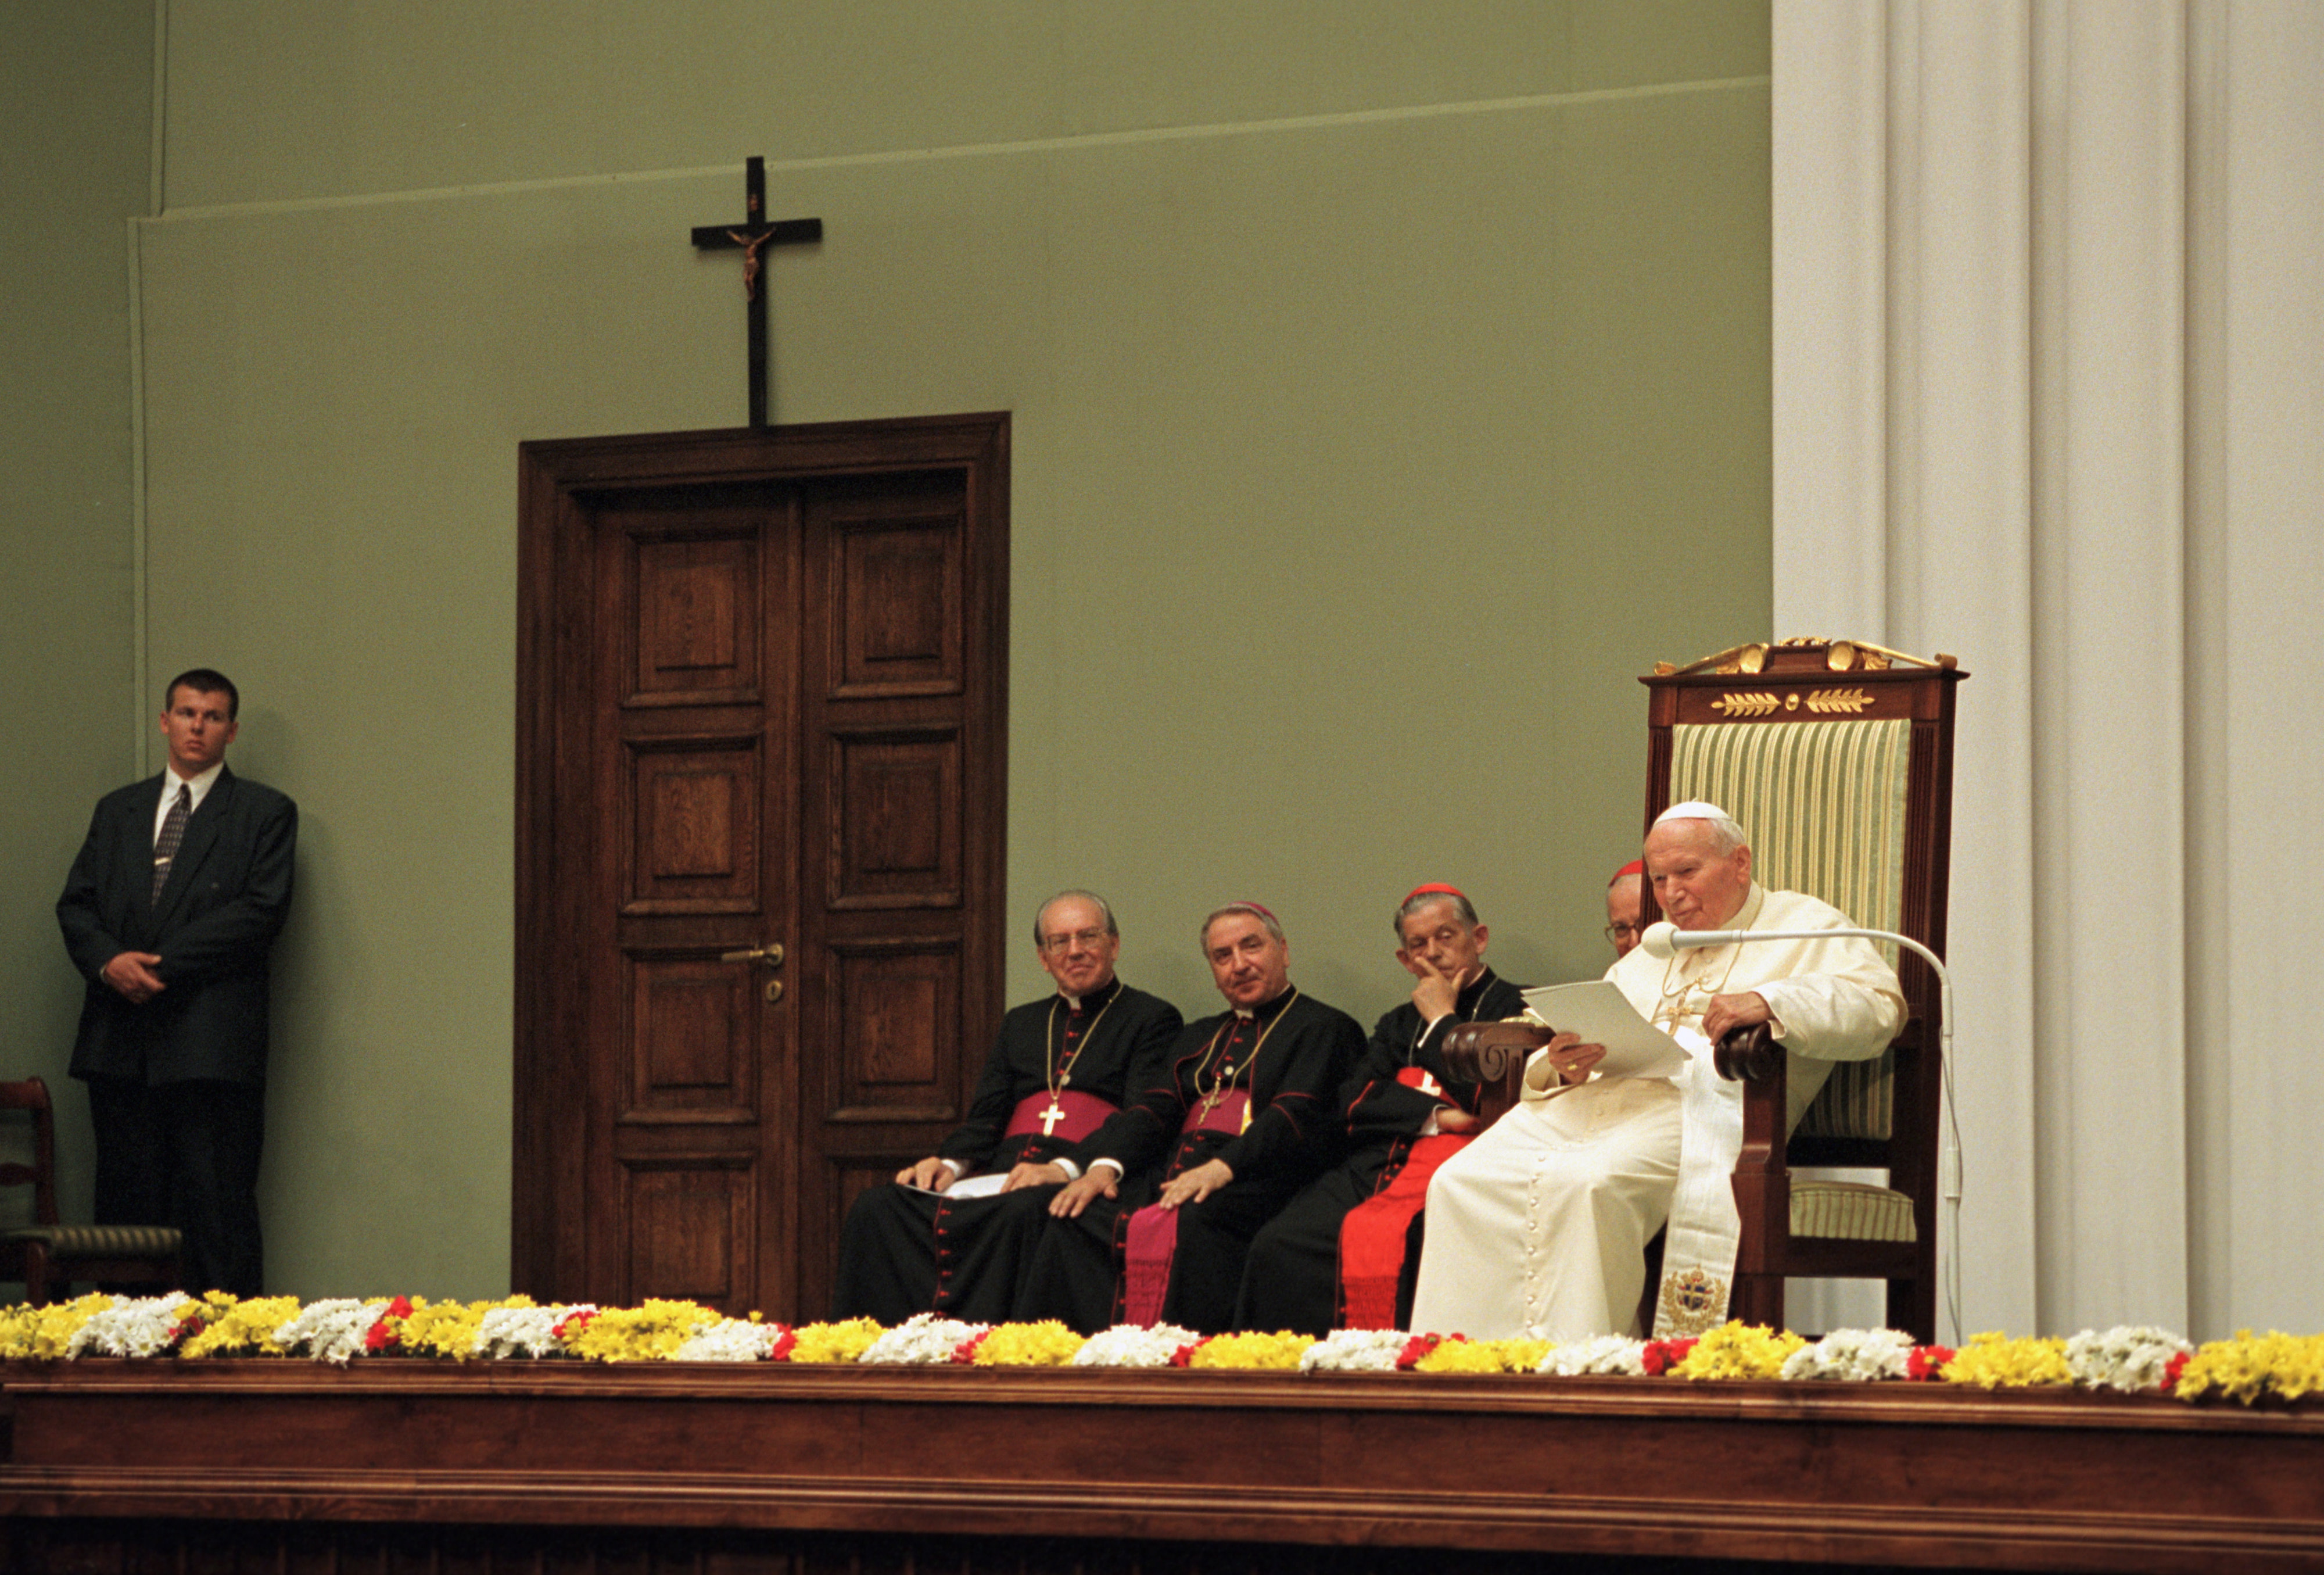 Krzyż w Sejmie był już obecny podczas spotkania papieża Jana Pawła II z przedstawicielami władzy podczas jego siódmej pielgrzymki do Polski w dniach 5-17 czerwca 1999. 